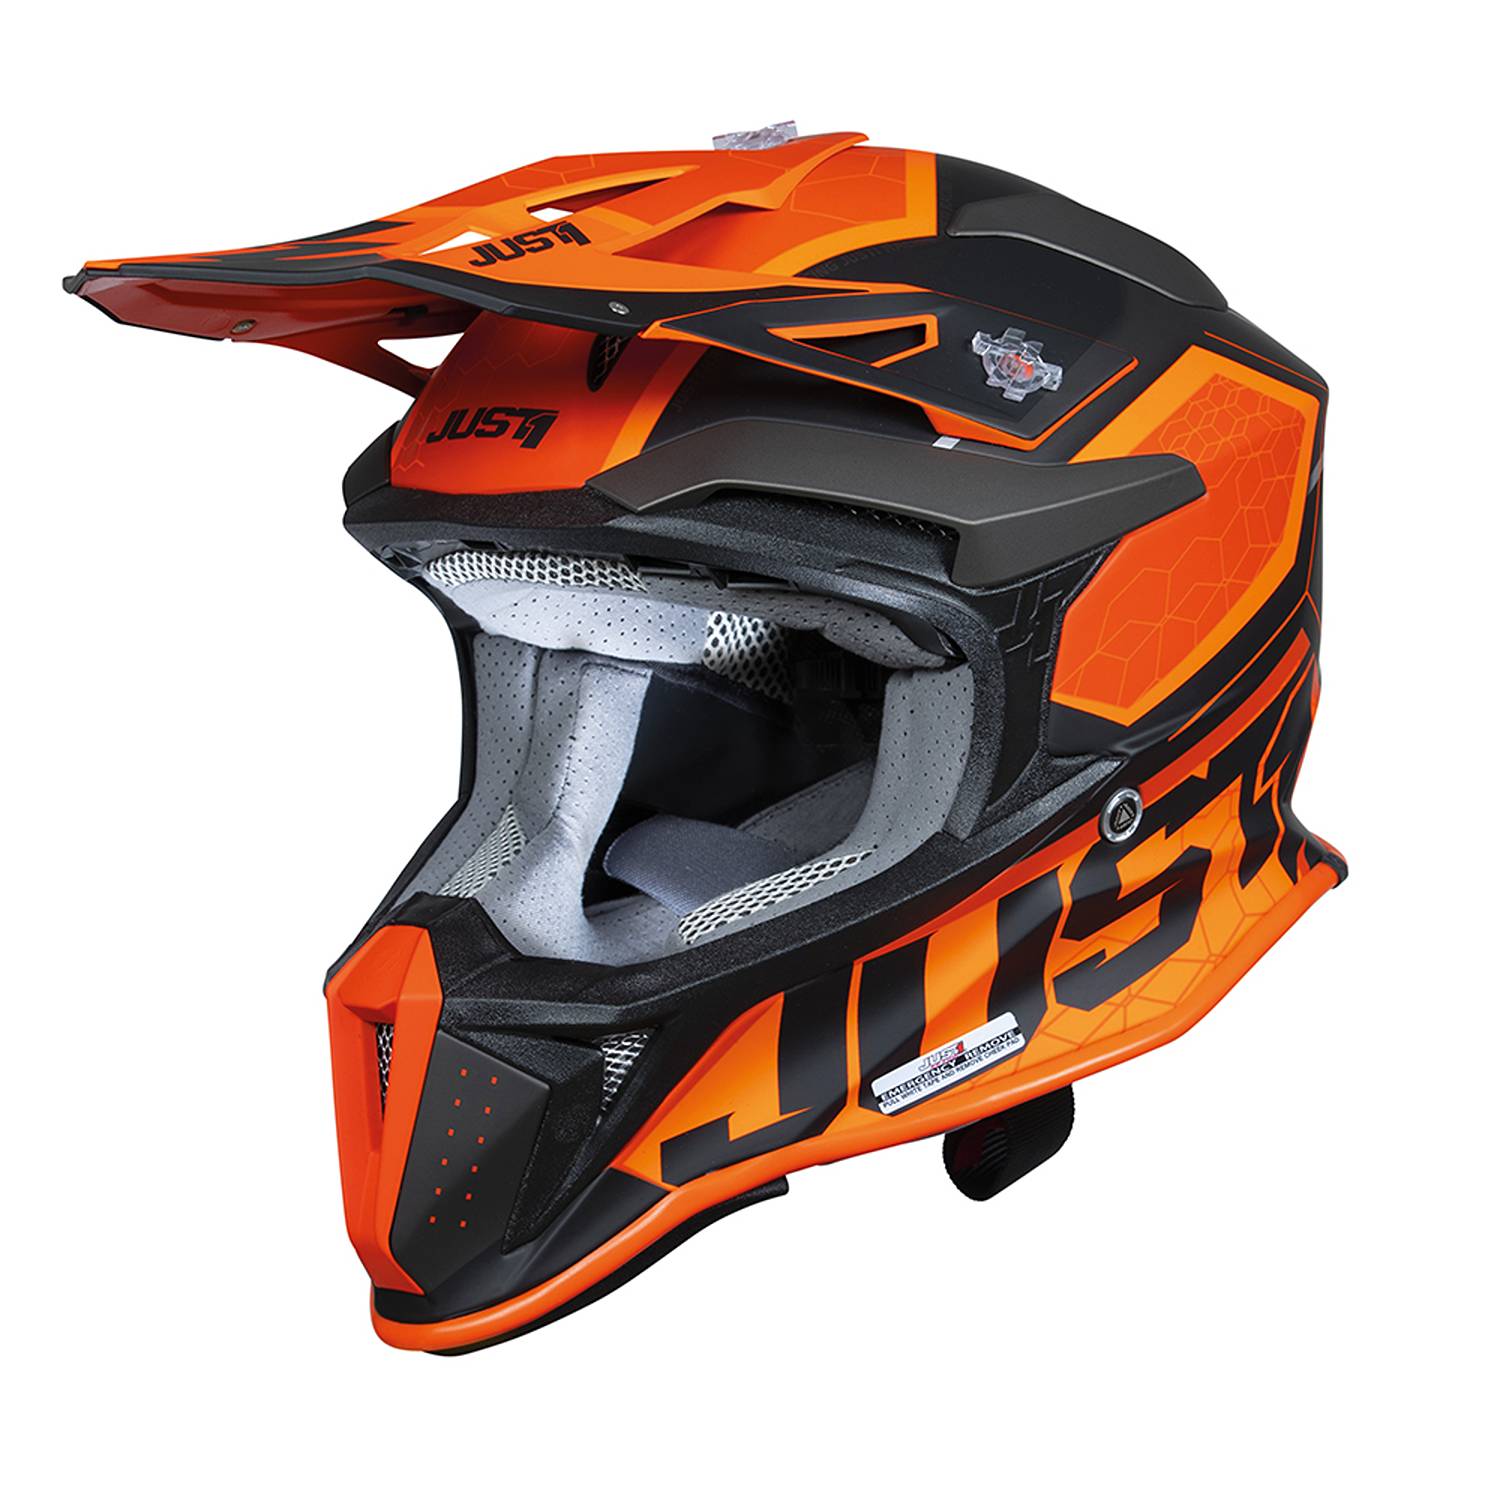 Image of Just1 J18-F Hexa Orange Black Matt Offroad Helmet Size XL ID 8055774027366